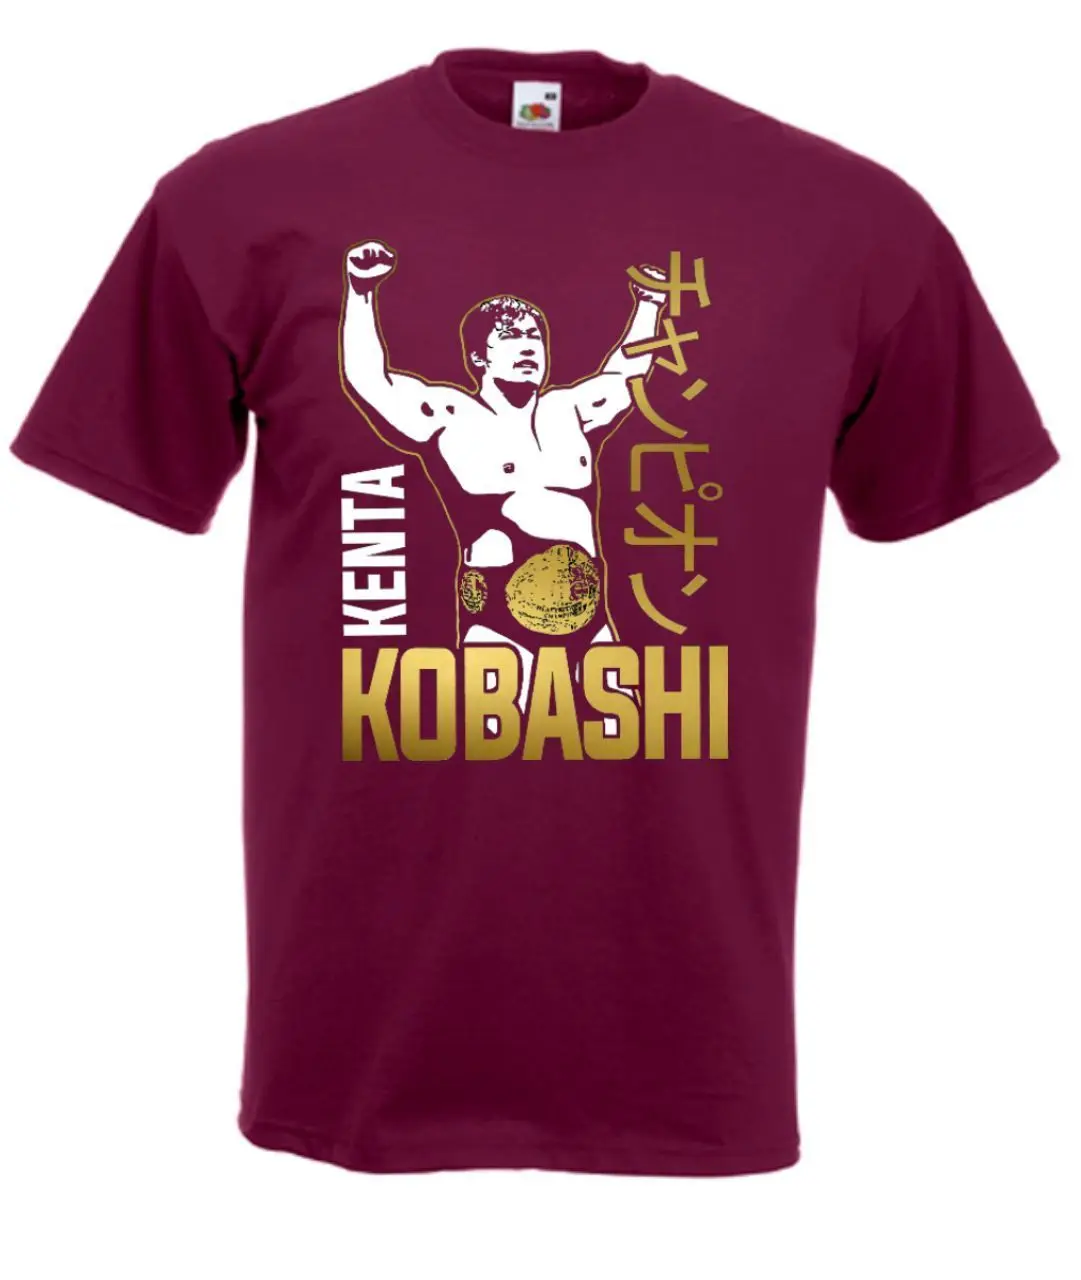 Kenta Kobashi اليابانية المصارعة أسطورة T قميص بارد عارضة فخر t قميص الرجال للجنسين الأزياء التي شيرت شحن مجاني مضحك